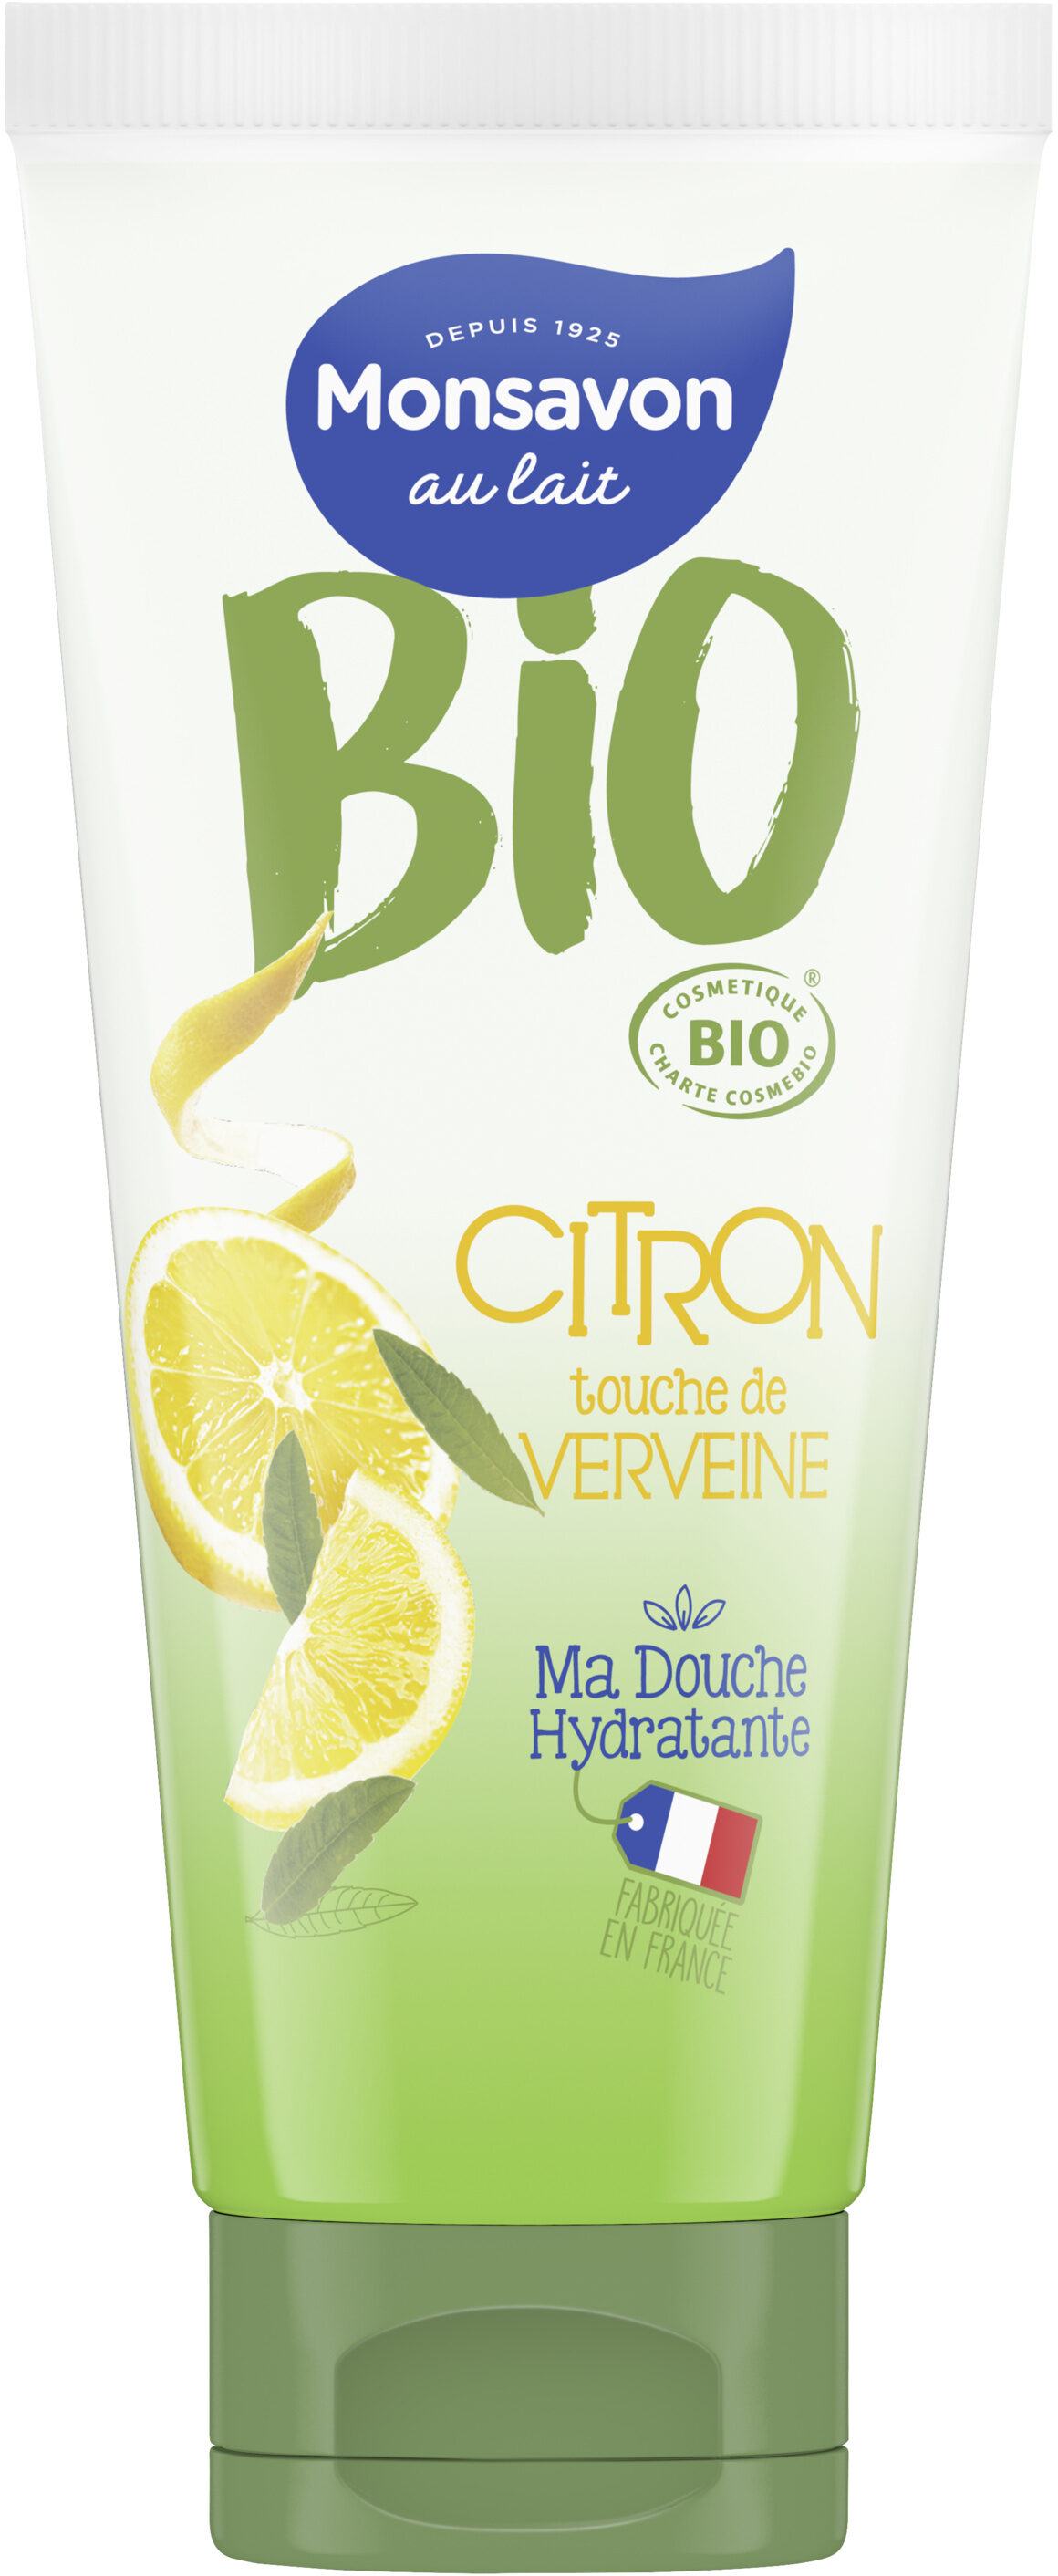 Monsavon Gel Douche Hydratant Certifié Bio Citron Touche de Verveine 200ml - Produit - fr